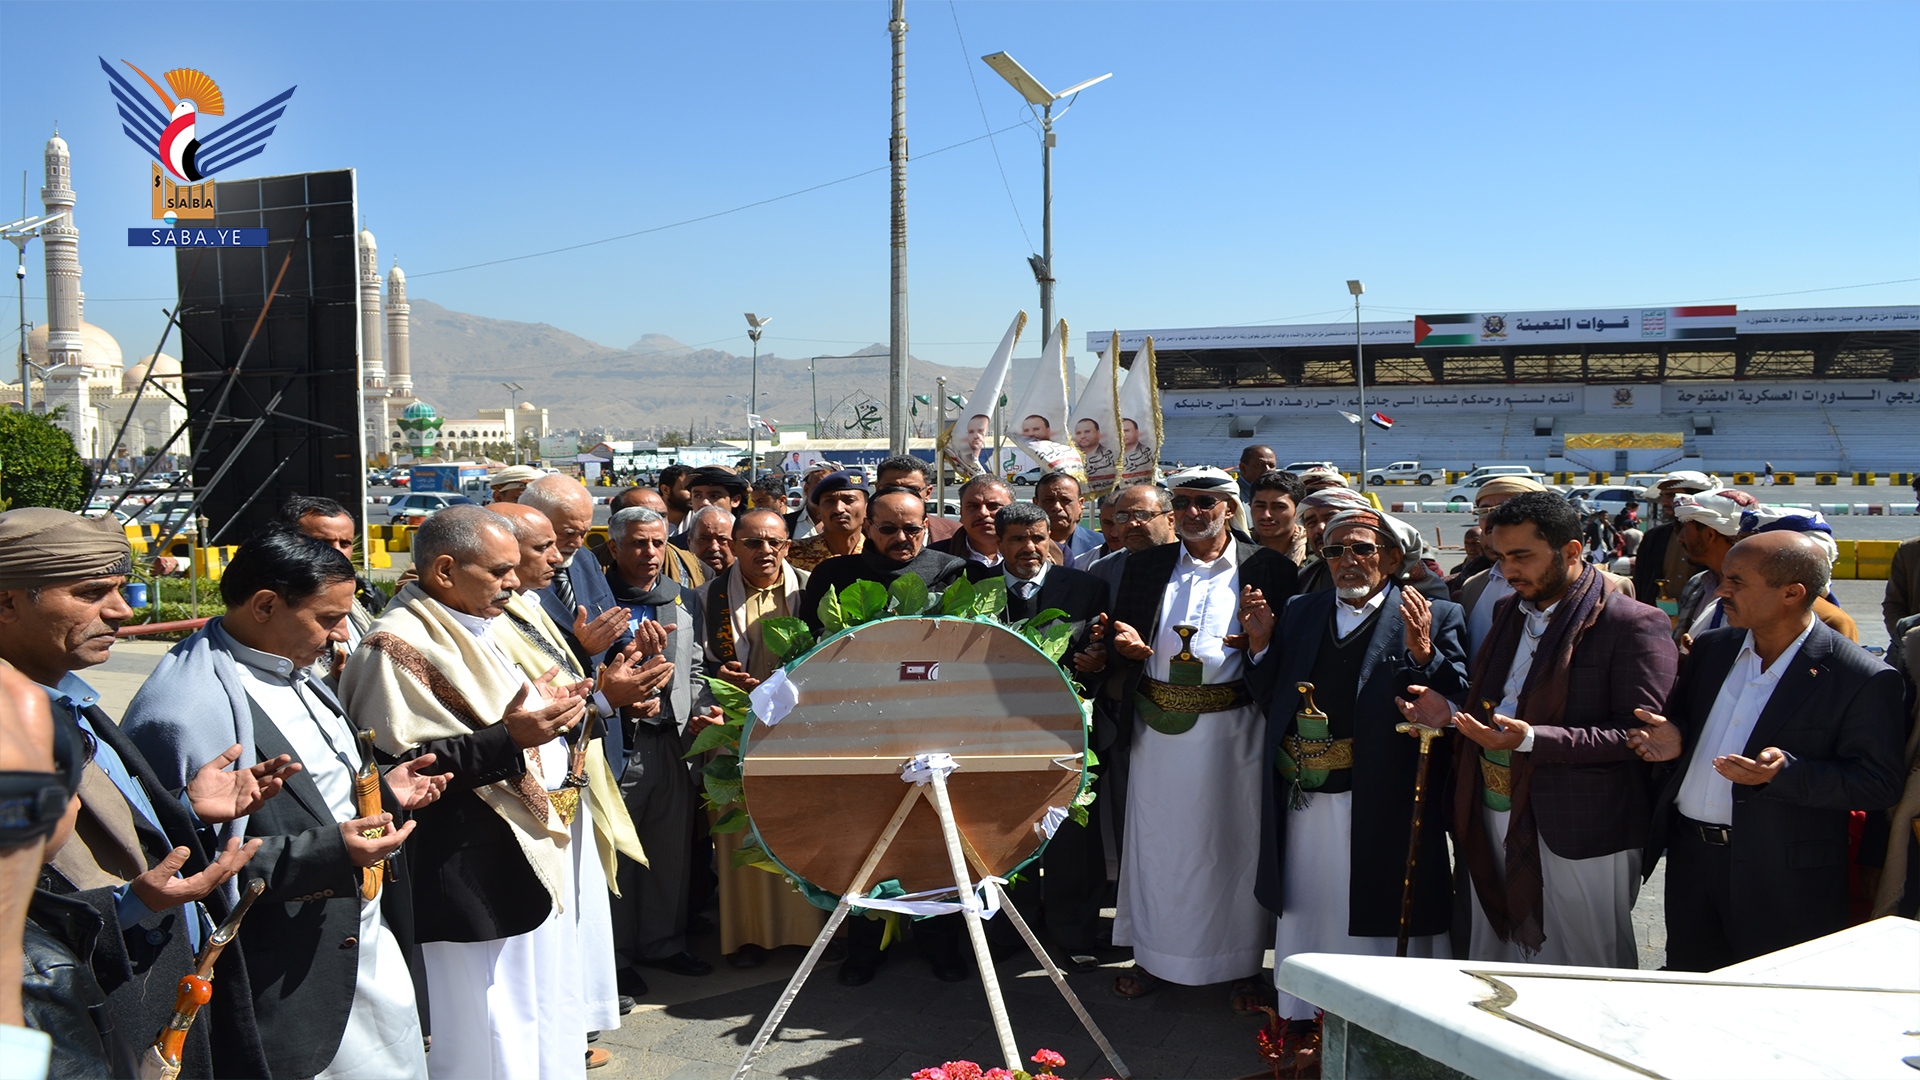 El presidente del Consejo Shura visita la tumba del presidente mártir Al-Sammad y sus compañeros